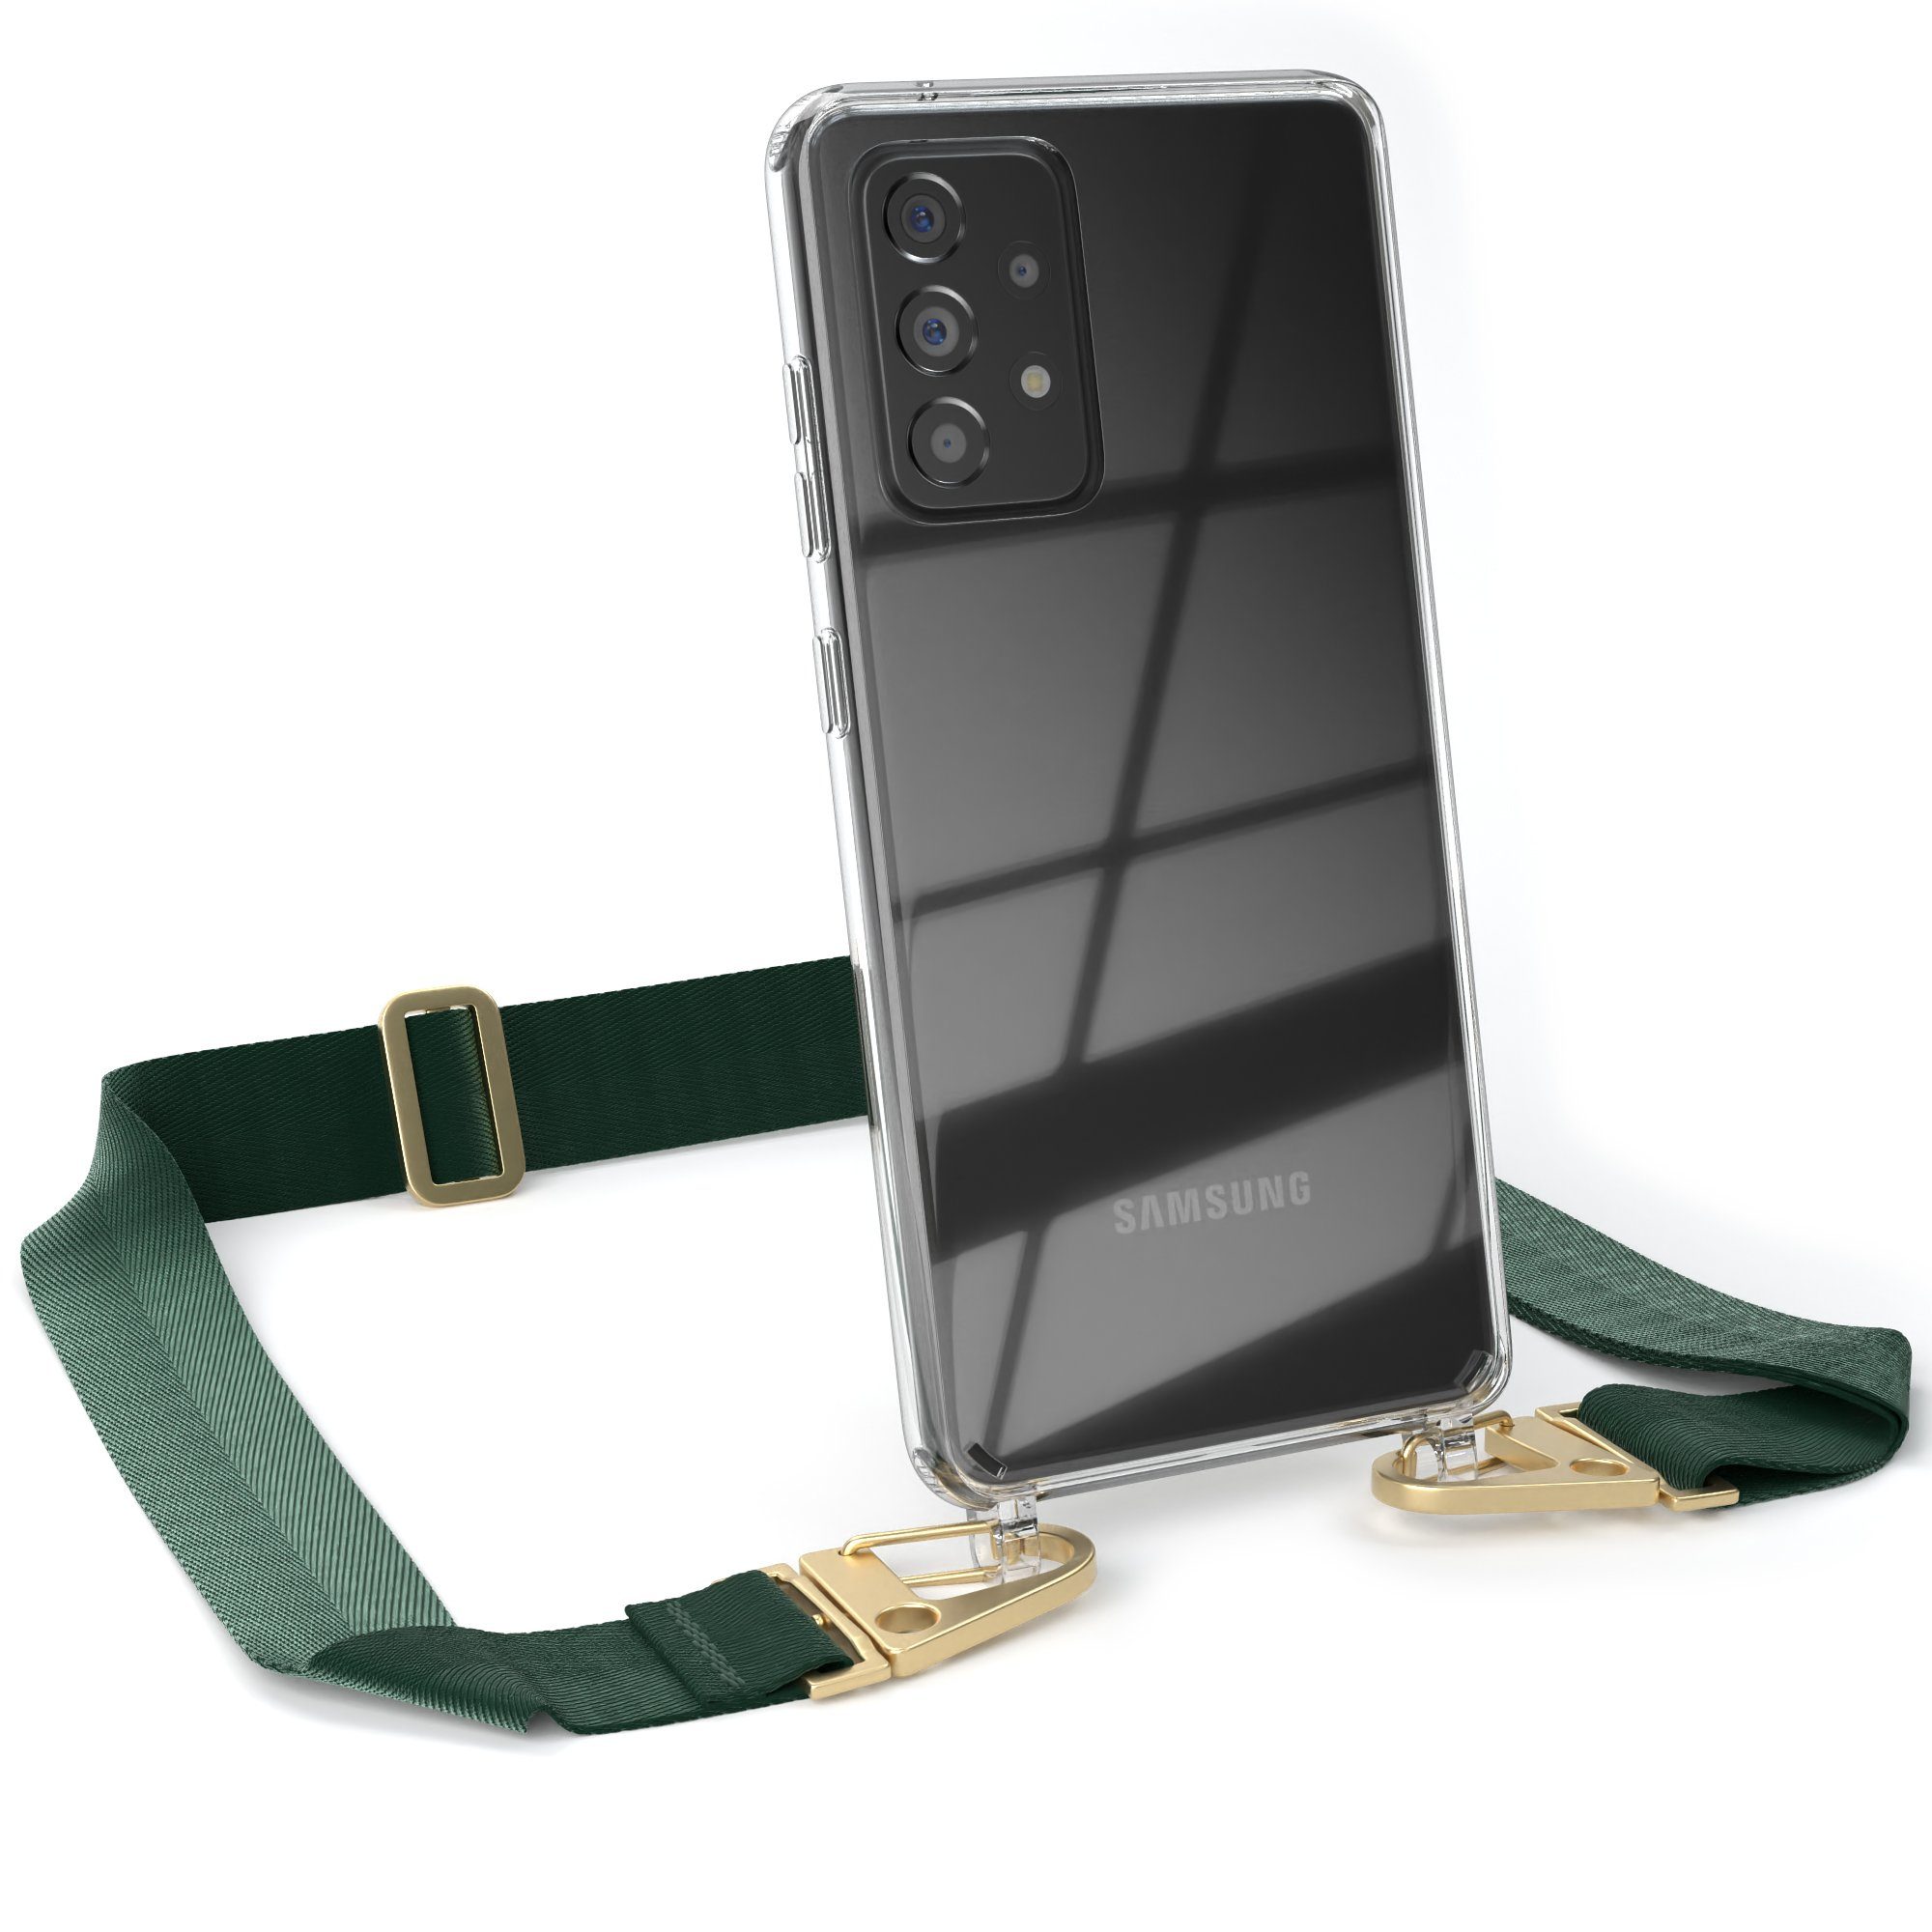 EAZY CASE Handykette Silikon Kette für Galaxy A52 / A52 5G / A52s 5G 6,5 Zoll, Handytasche durchsichtige Silikon Hülle mit breitem Umhängeband Grün